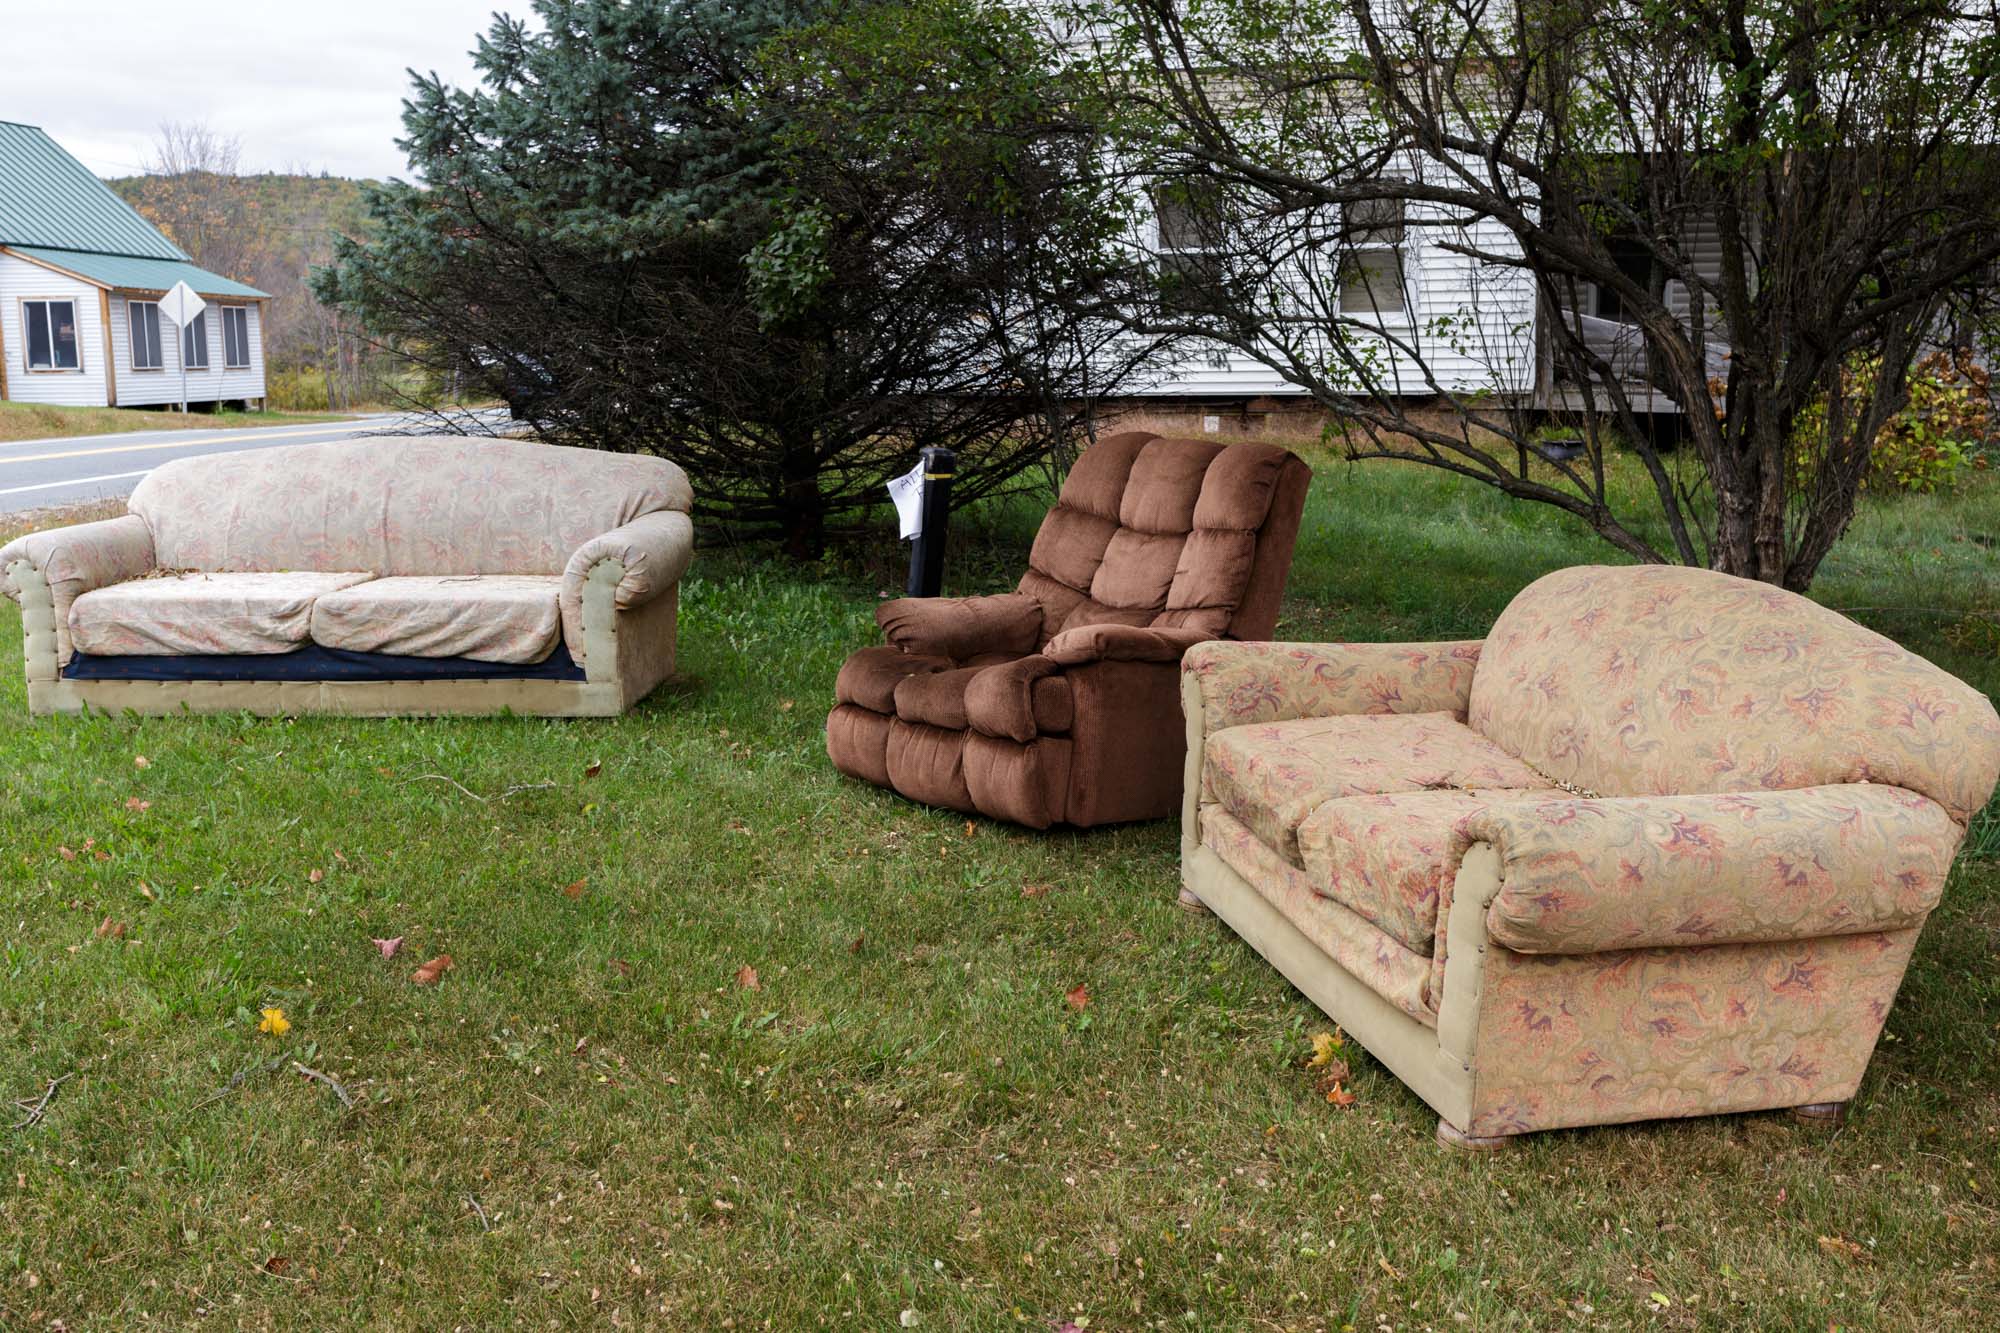 Furniture on Lawn